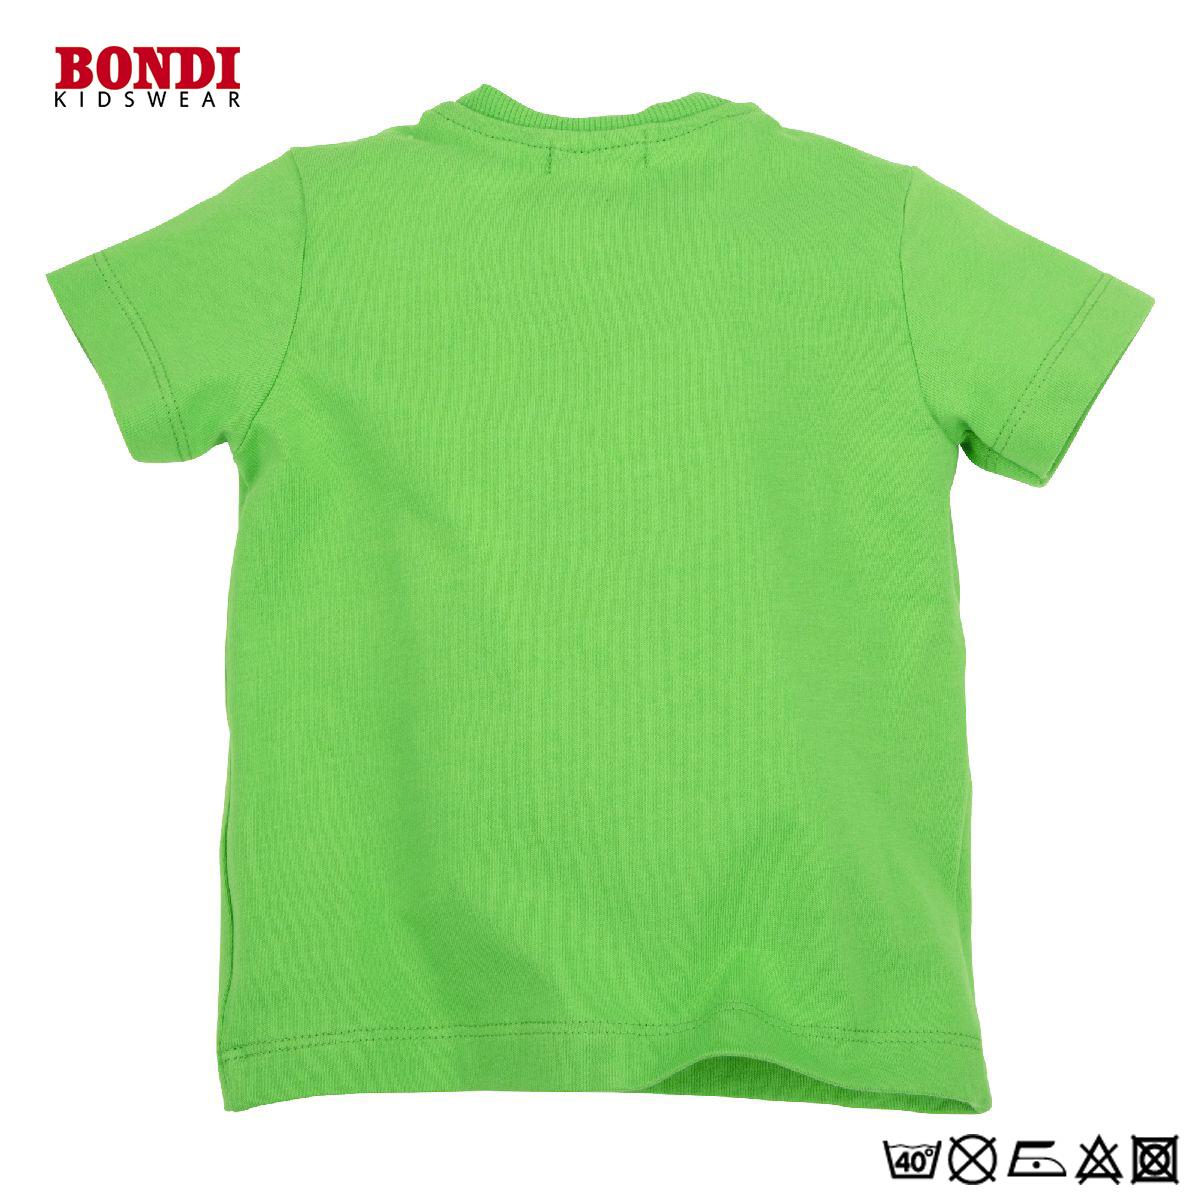 Baby T-Shirt ´Beep Beep´ grün halbärmlig 86